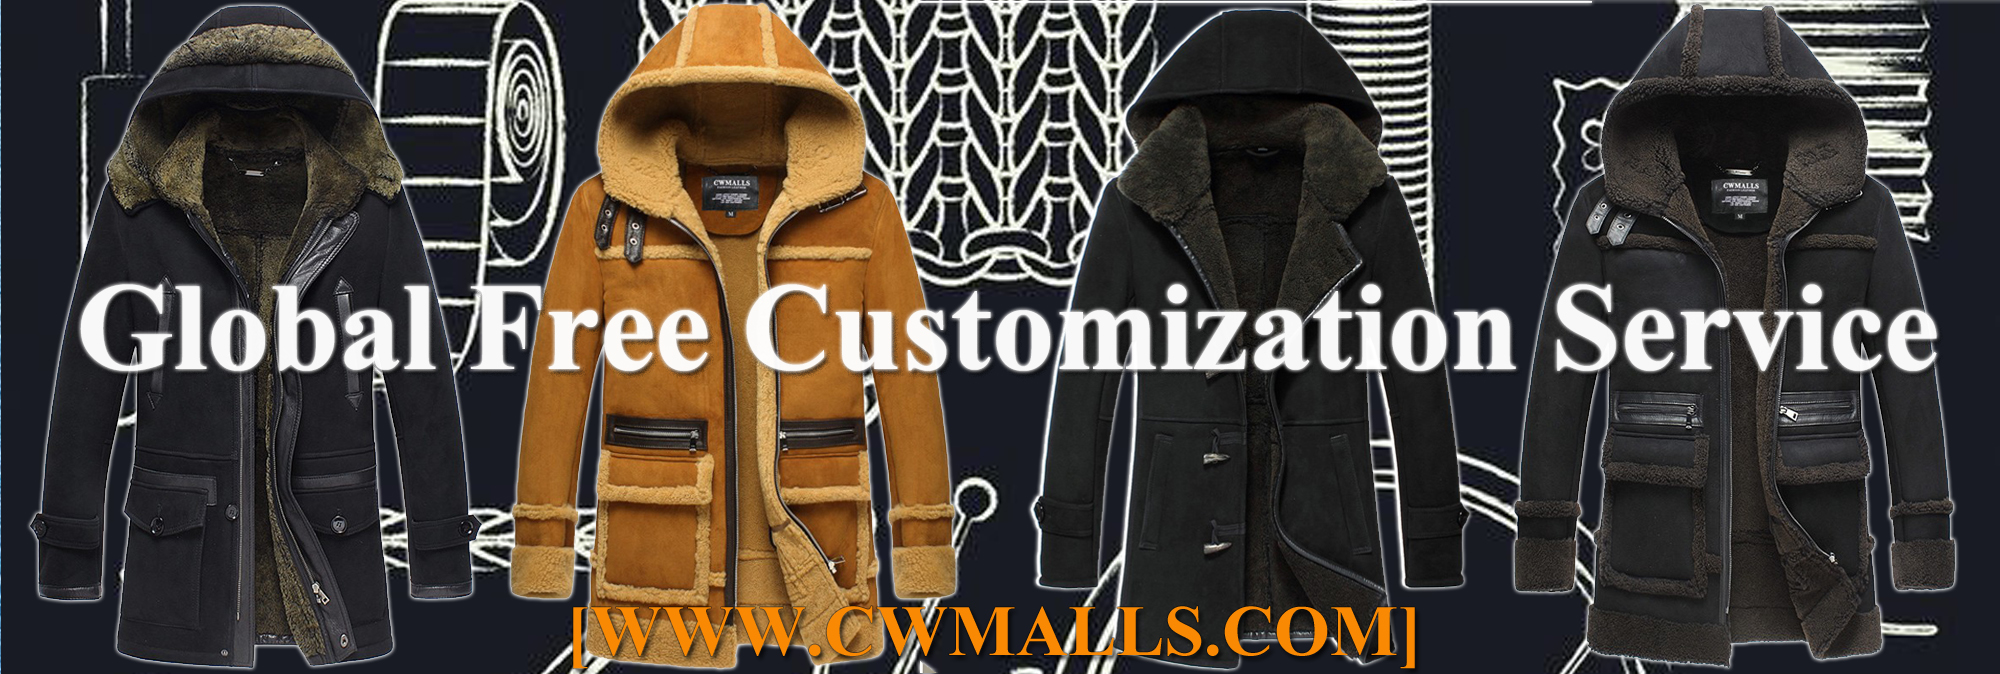 CWMALLS Global Free Customization Service 2